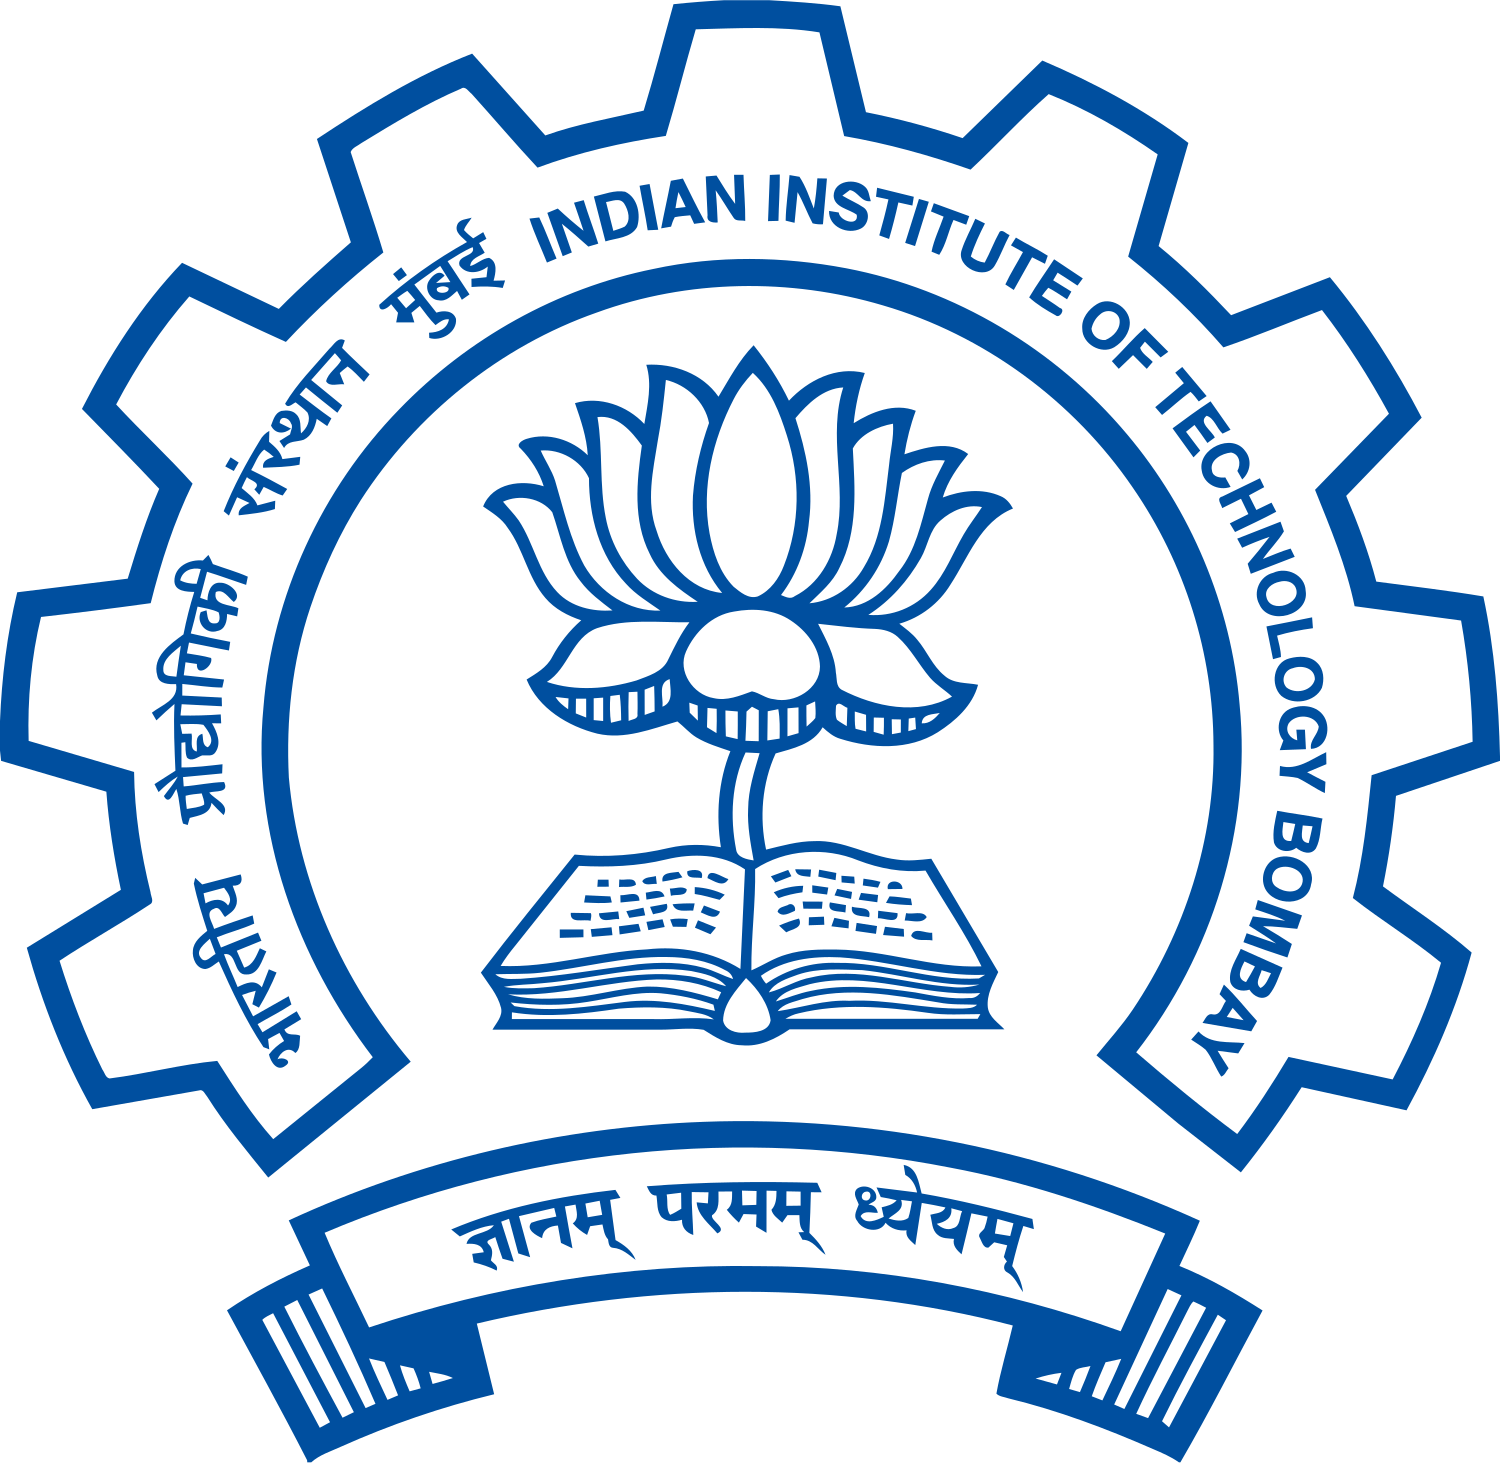 IIT Kanpur - Wikipedia